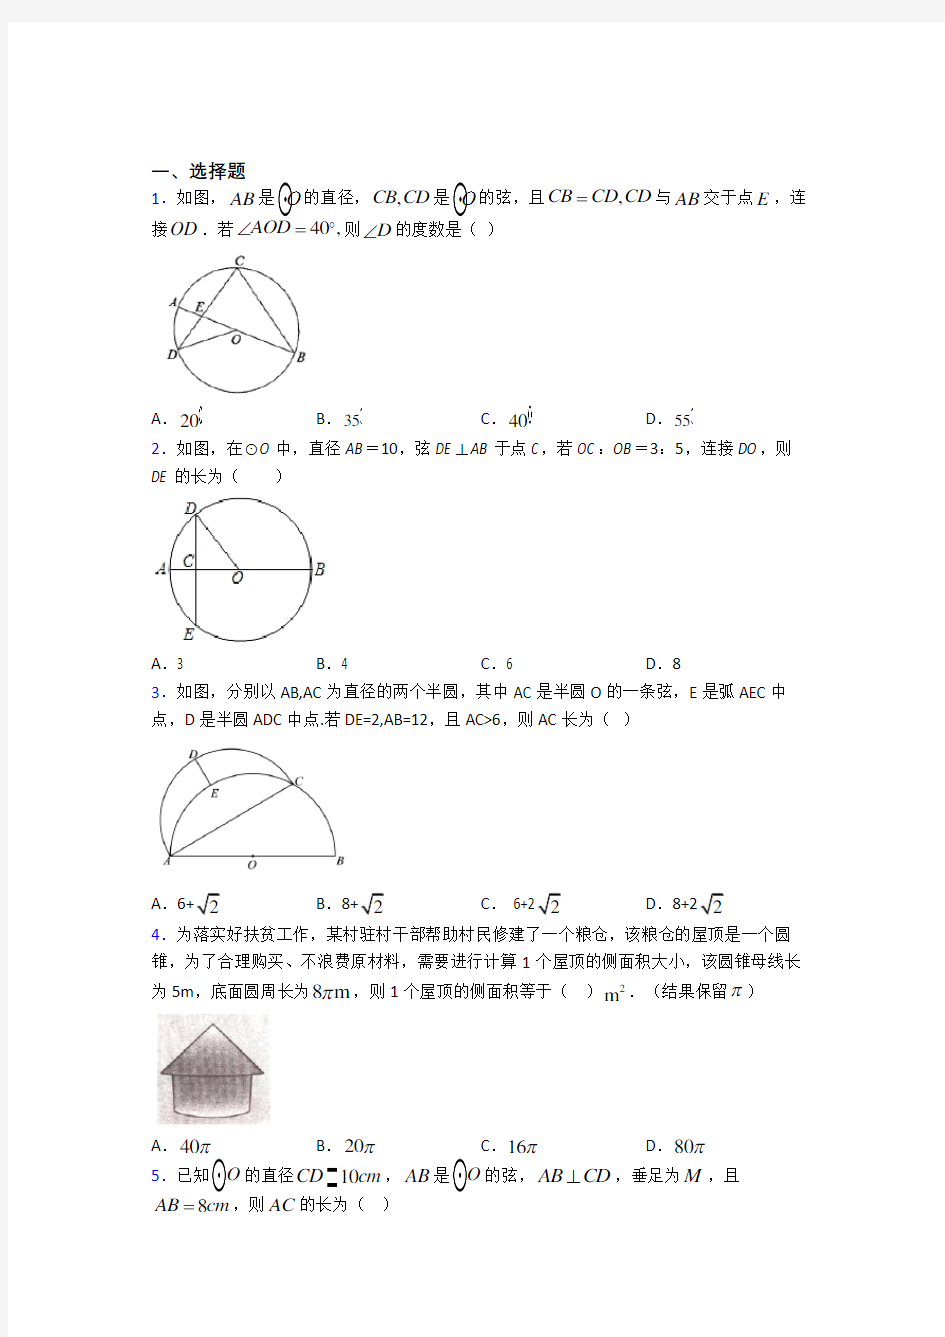 洛阳市第一高级中学九年级数学上册第四单元《圆》测试卷(包含答案解析)